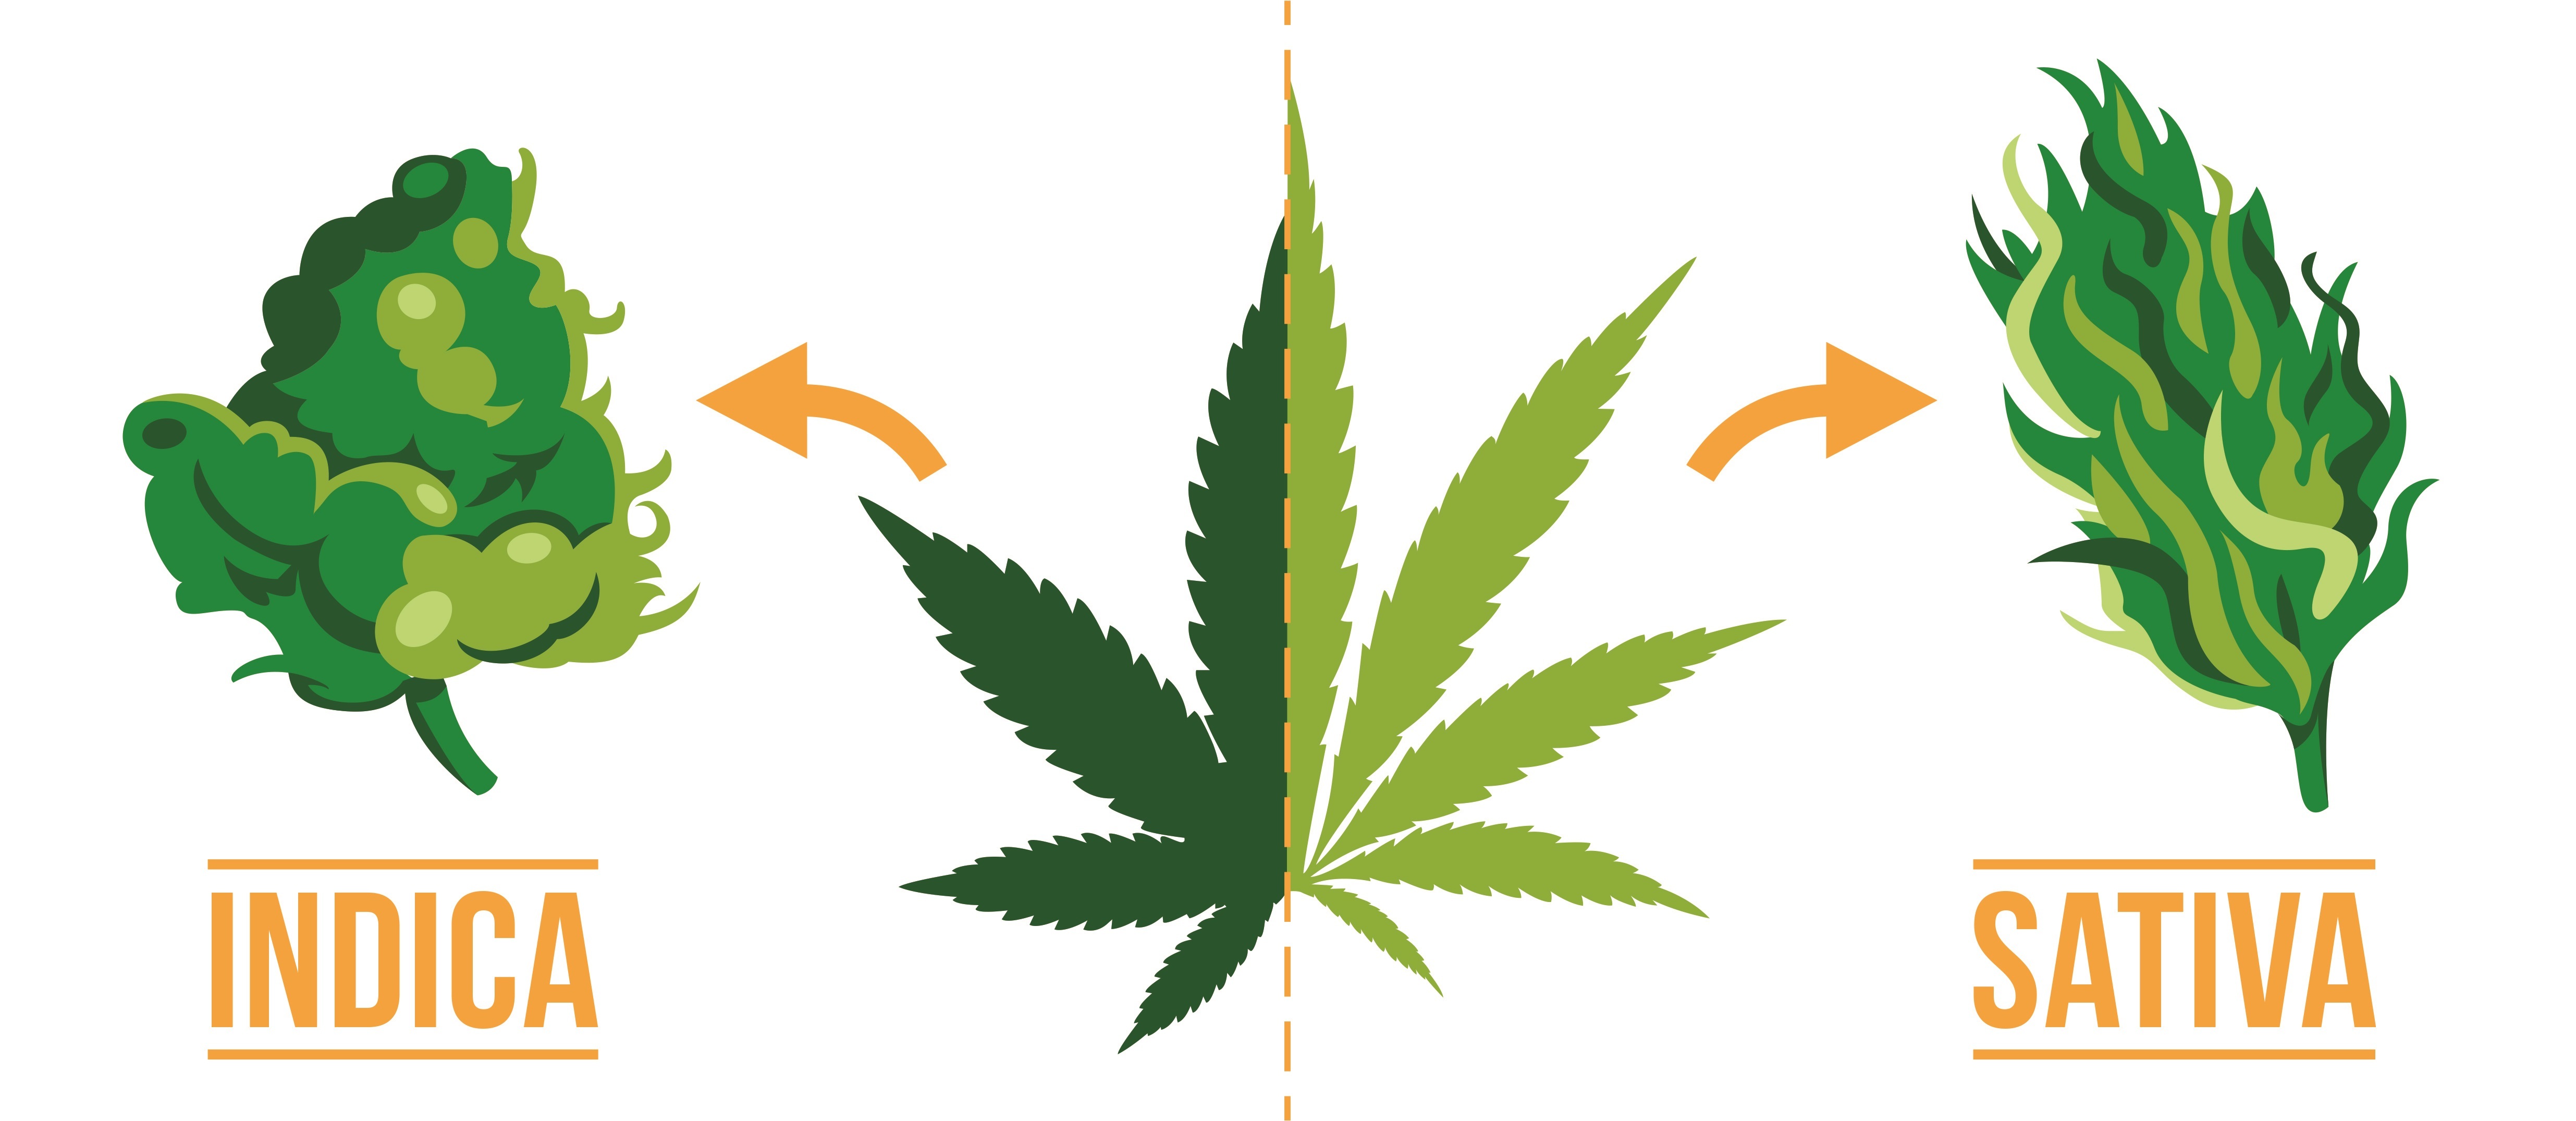 Cannabis indica e sativa presentano sostanziali differenze “fisiche” che permettono di distinguere con una certa facilità l’una e l’altra specie.